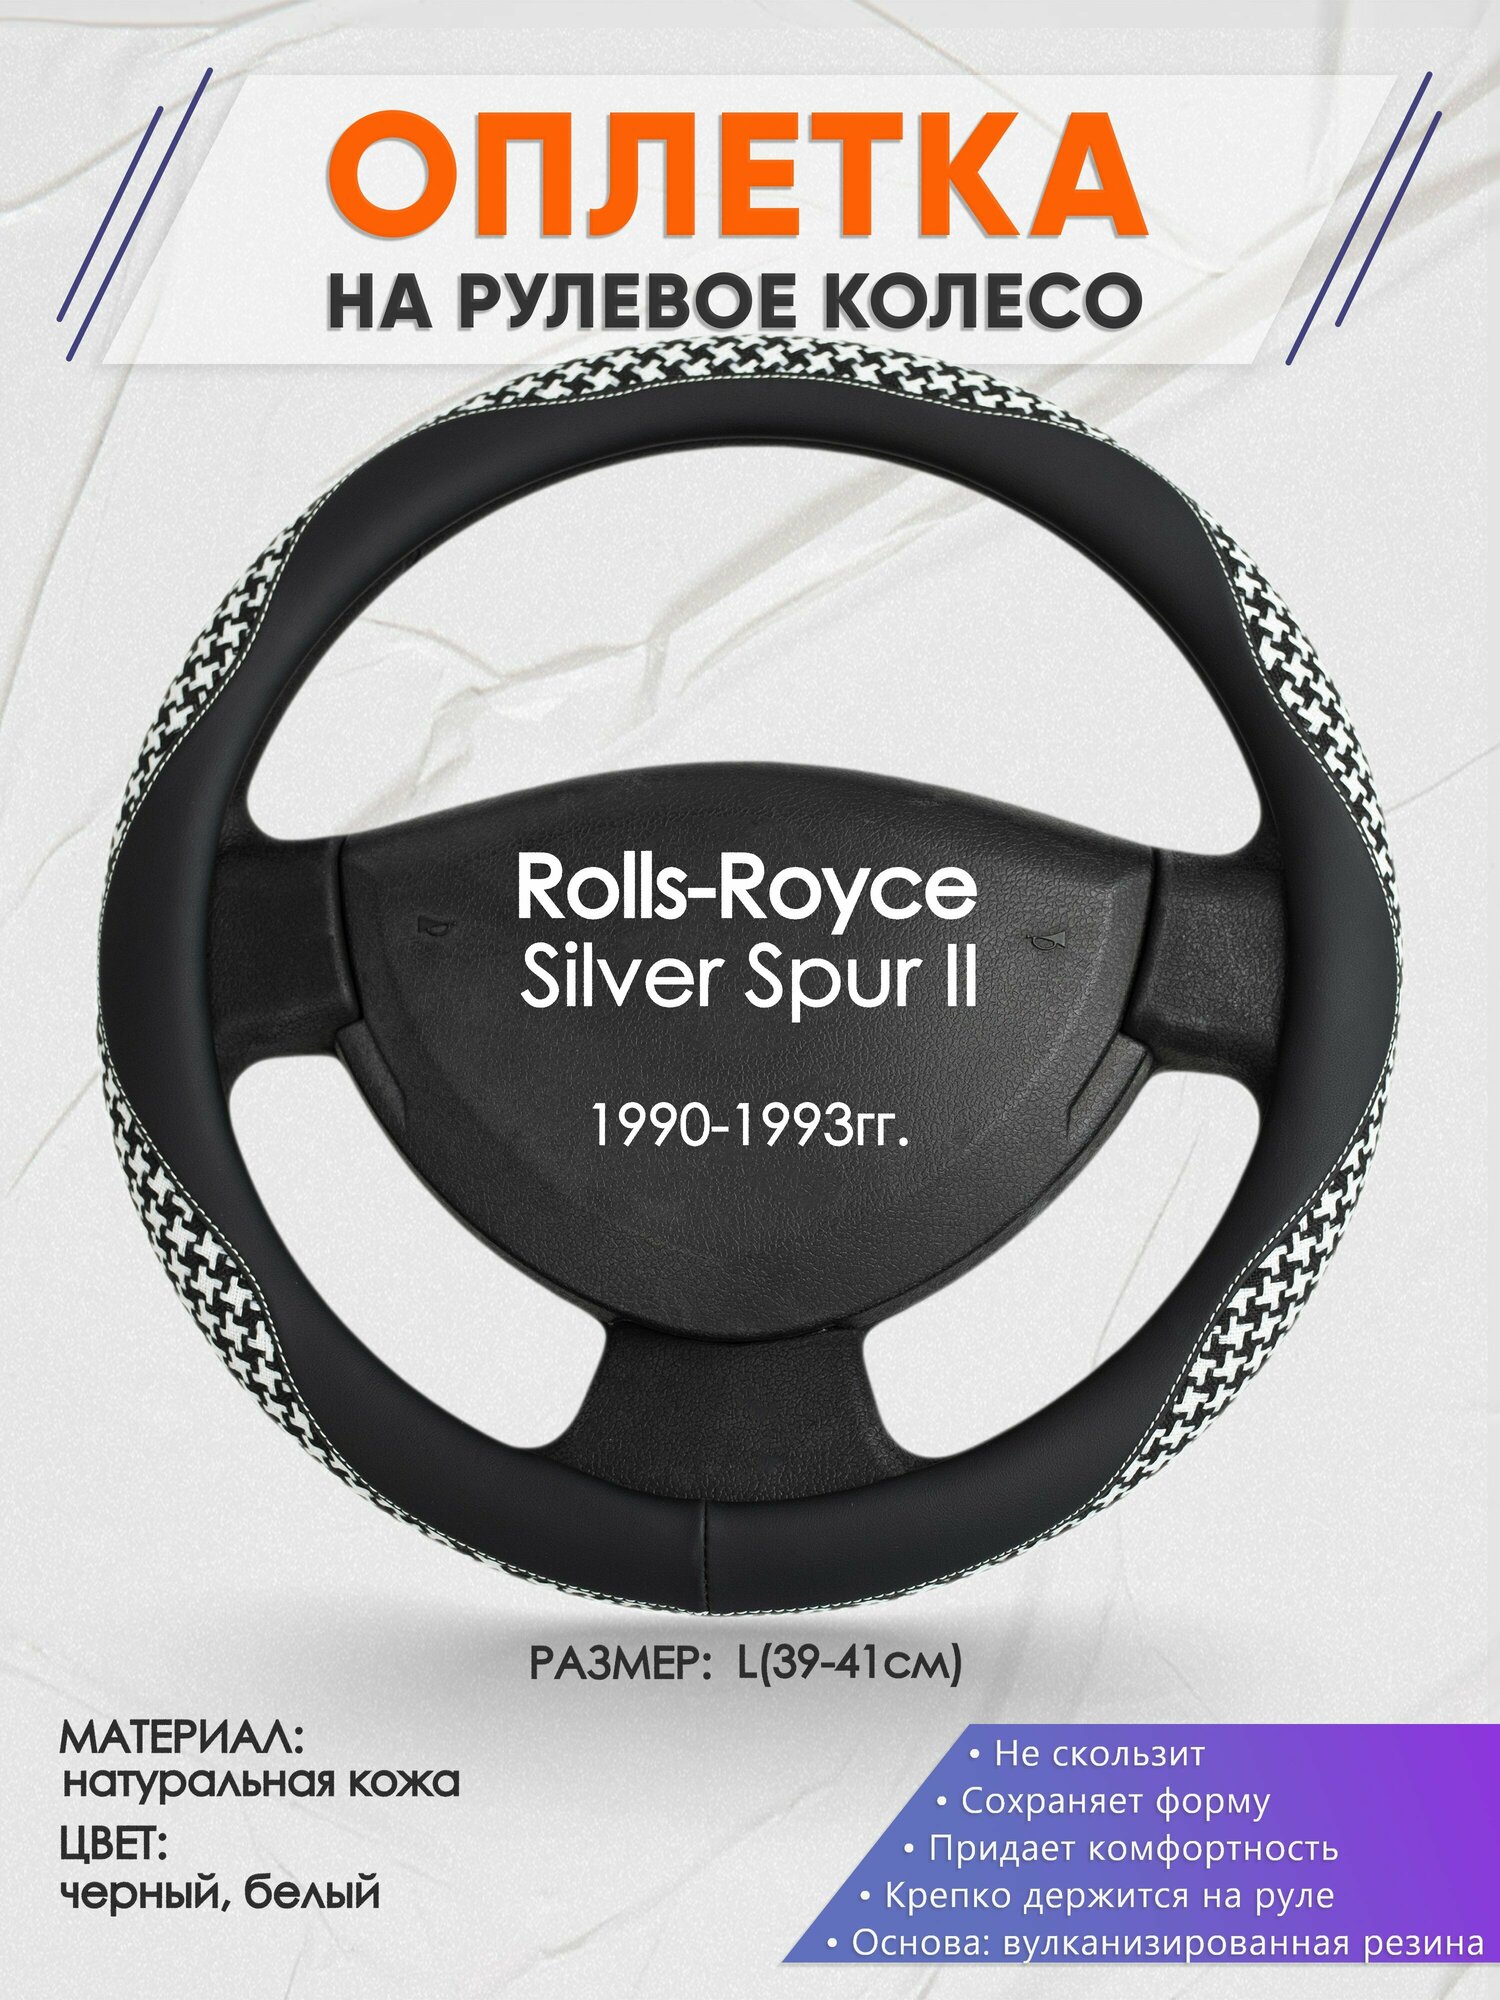 Оплетка на руль для Rolls-Royce Silver Spur 2(РоллсРойс Силвер Спур) 1990-1993, L(39-41см), Натуральная кожа 21